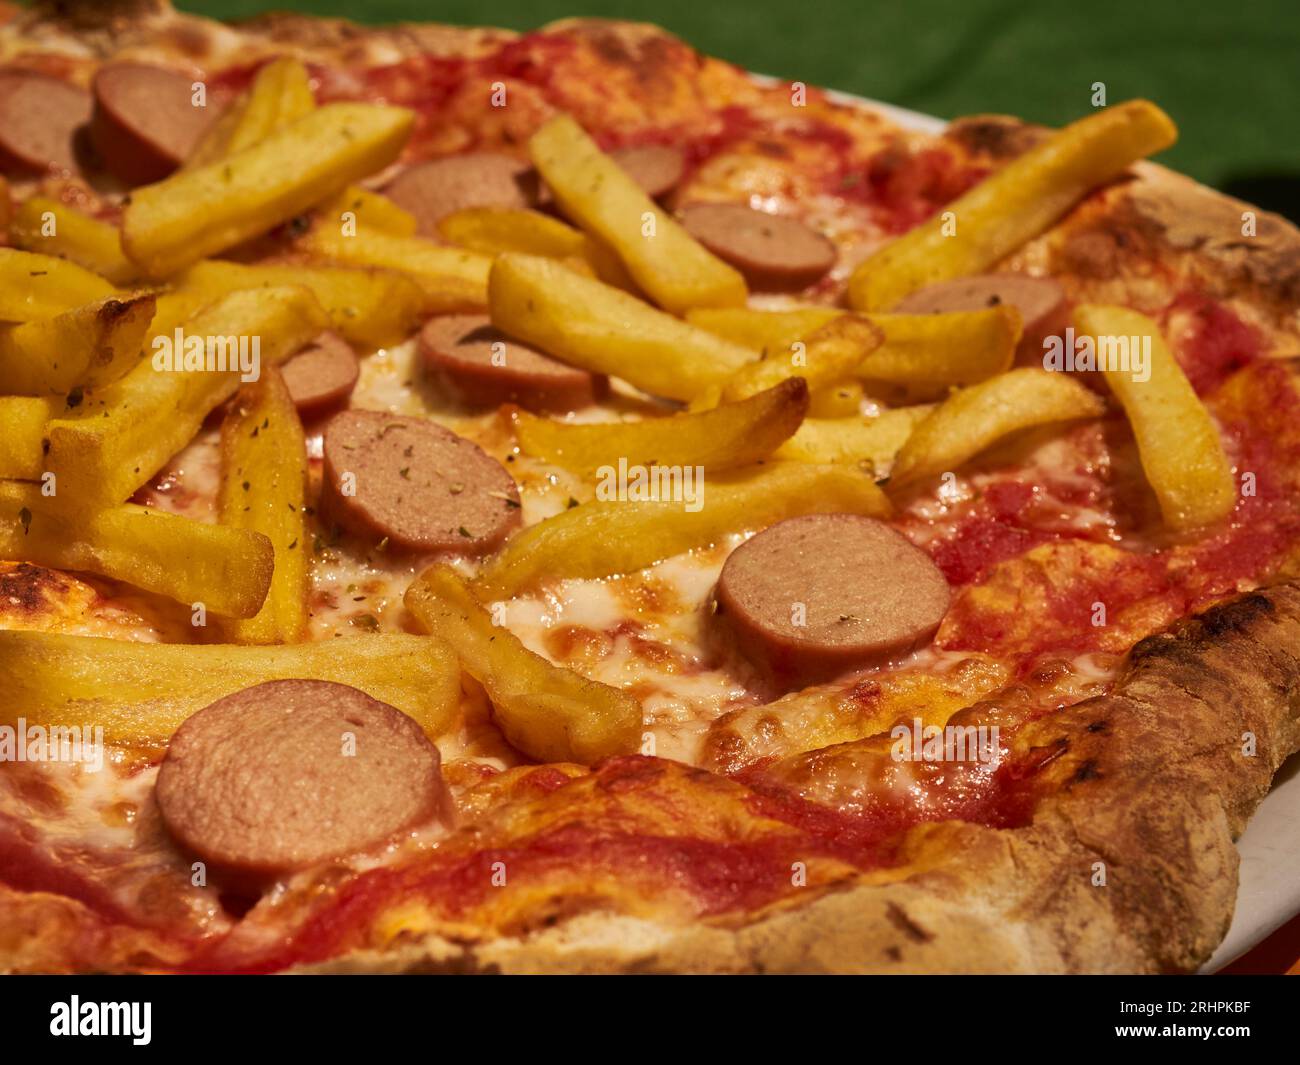 Une pizza garnie de frites et de tranches de hot-dog, surnommée humoristiquement « American Pizza », servie à Cuneo, Piémont, Italie Banque D'Images